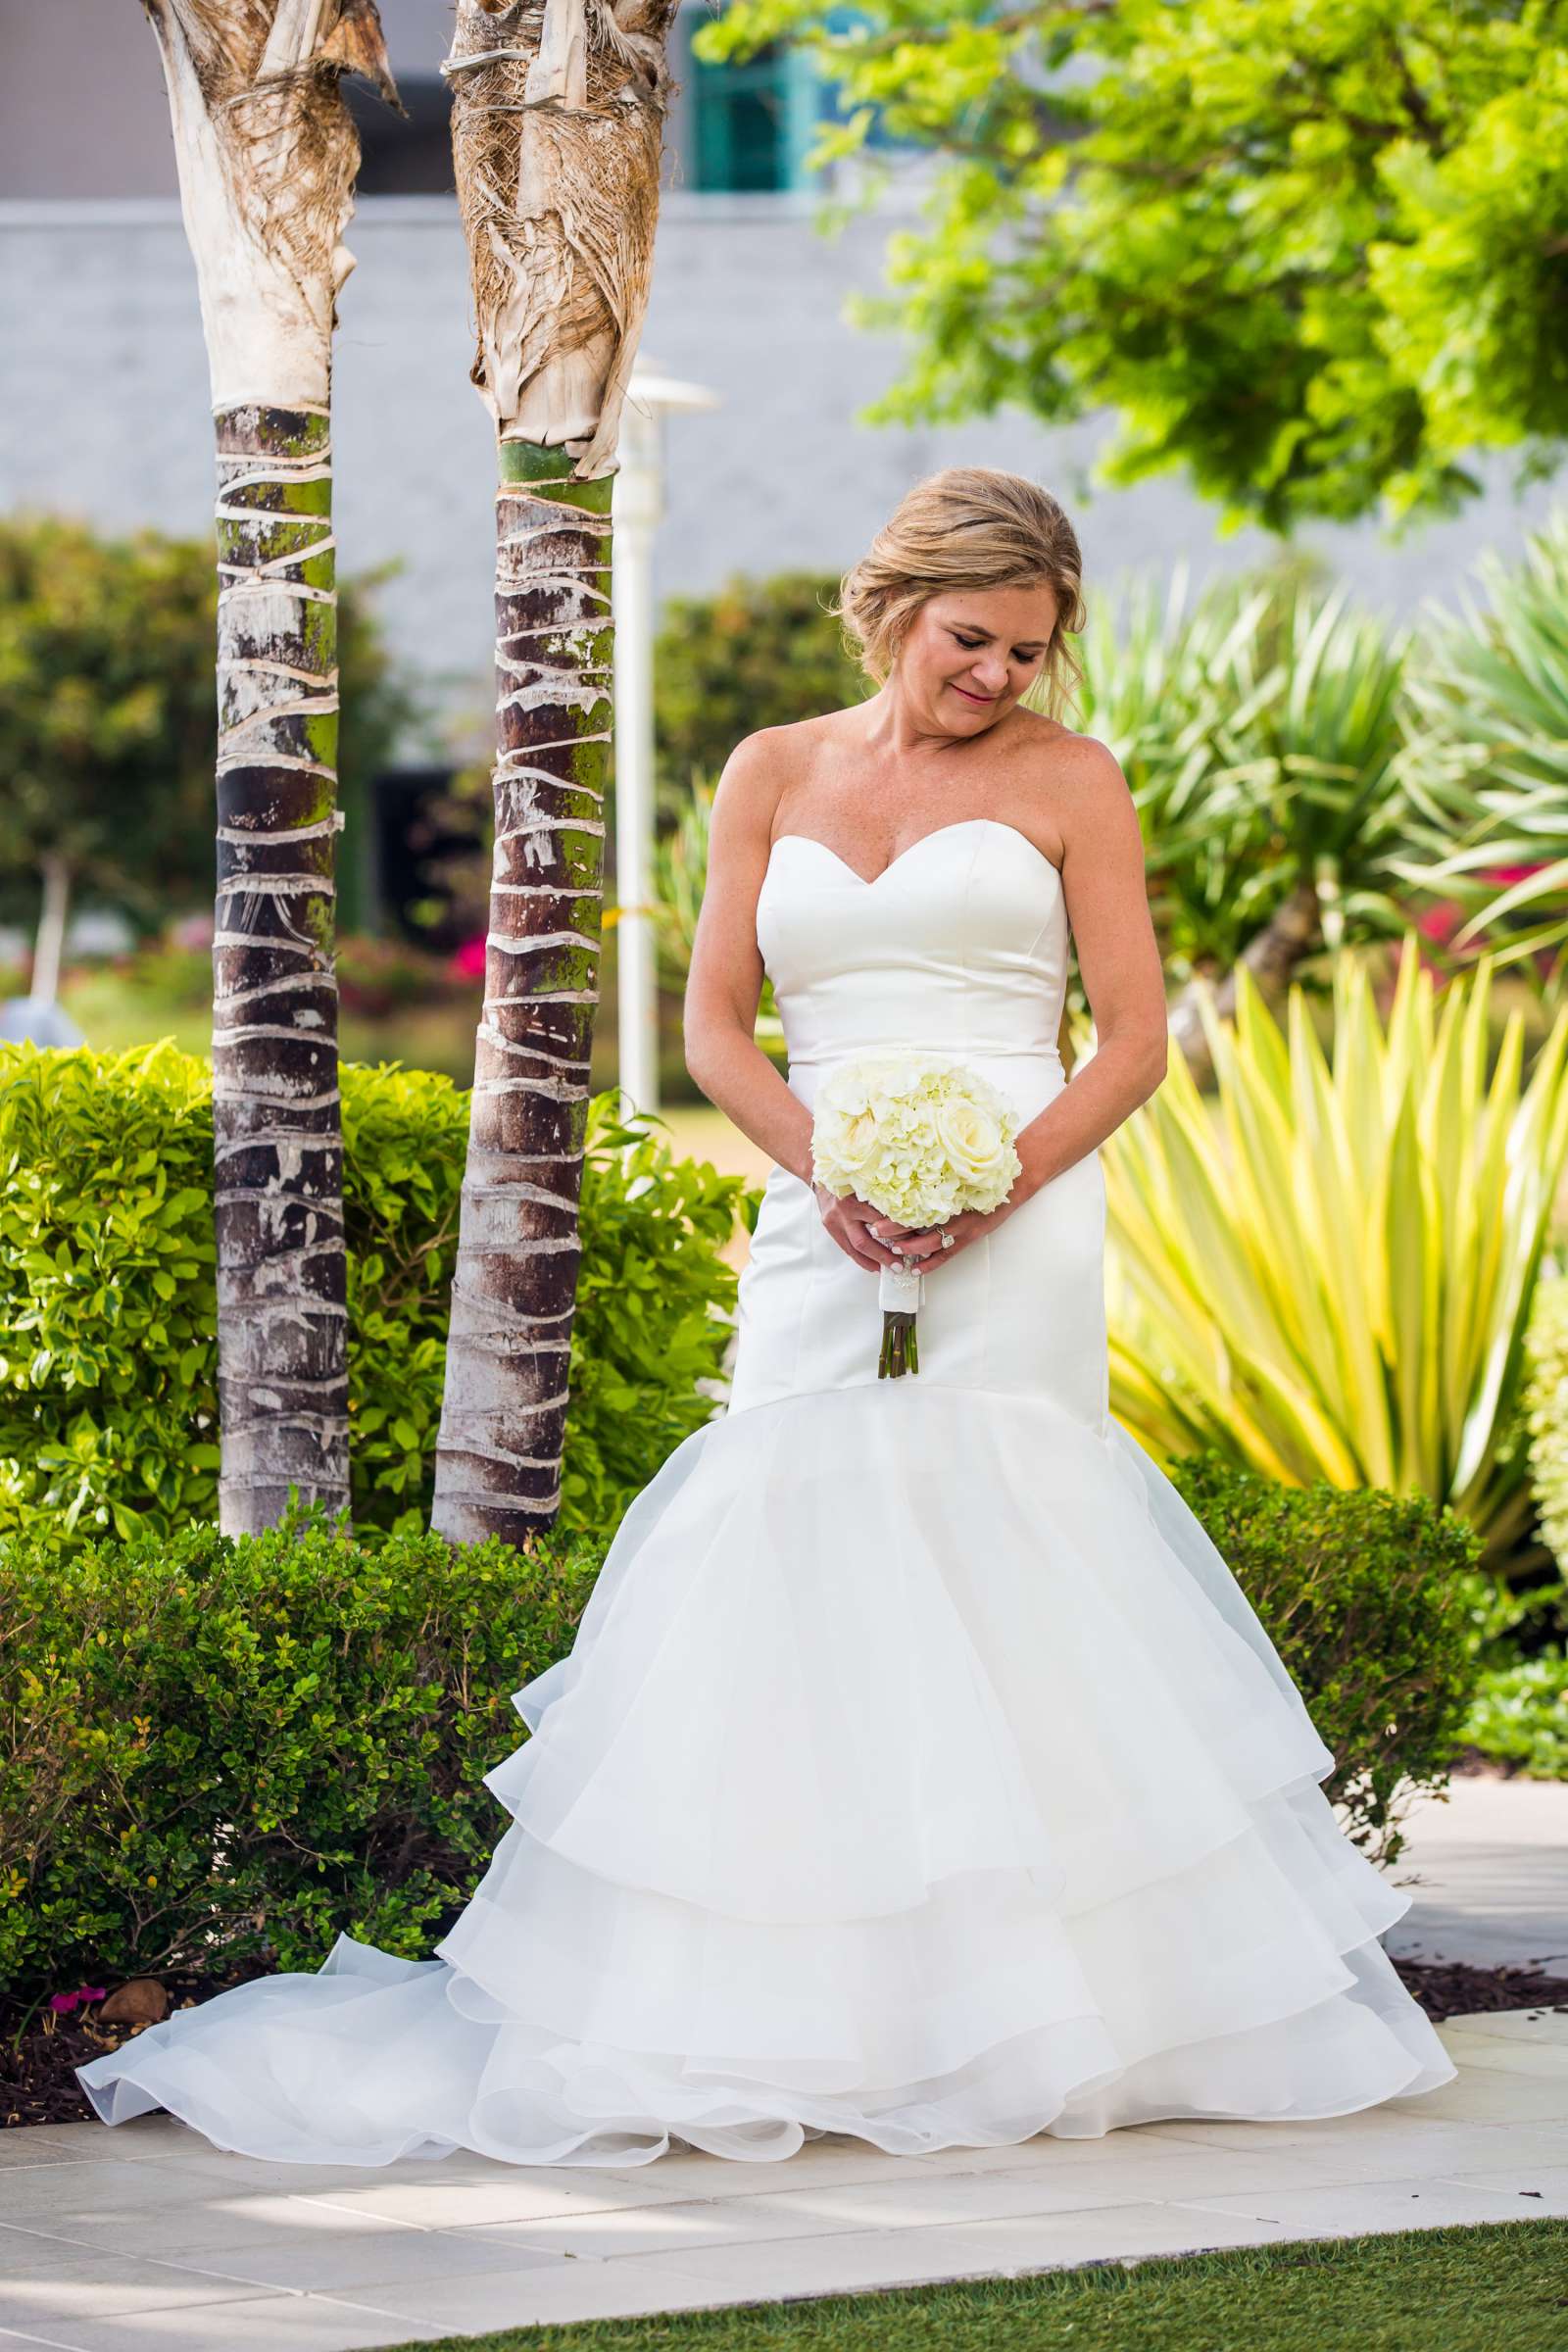 Hilton San Diego Bayfront Wedding, Debi and Dan Wedding Photo #484066 by True Photography